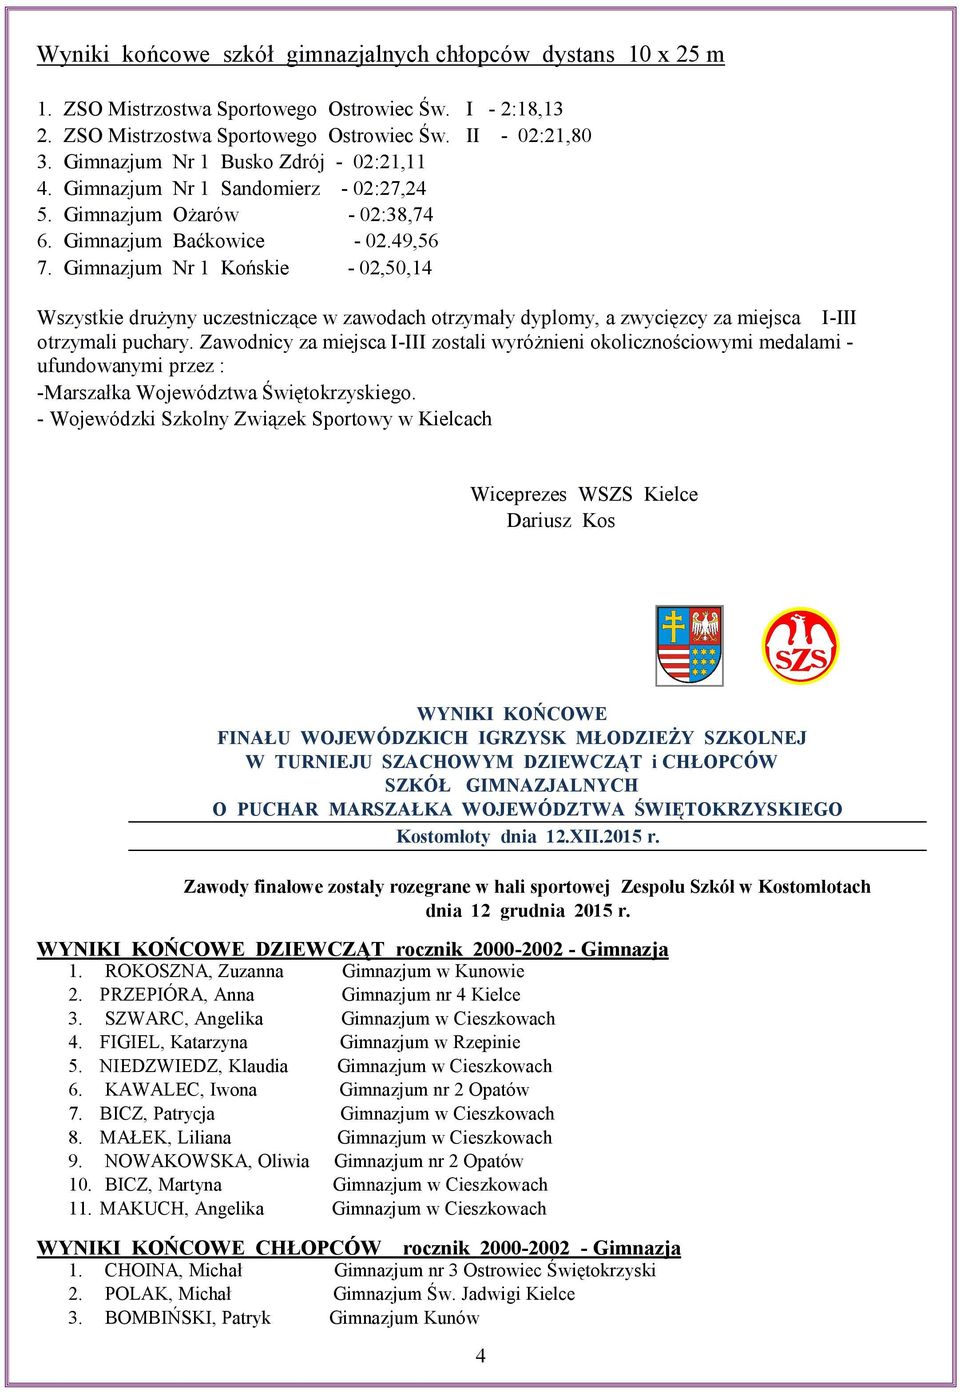 Gimnazjum Nr 1 Końskie - 02,50,14 Wszystkie drużyny uczestniczące w zawodach otrzymały dyplomy, a zwycięzcy za miejsca I-III otrzymali puchary.